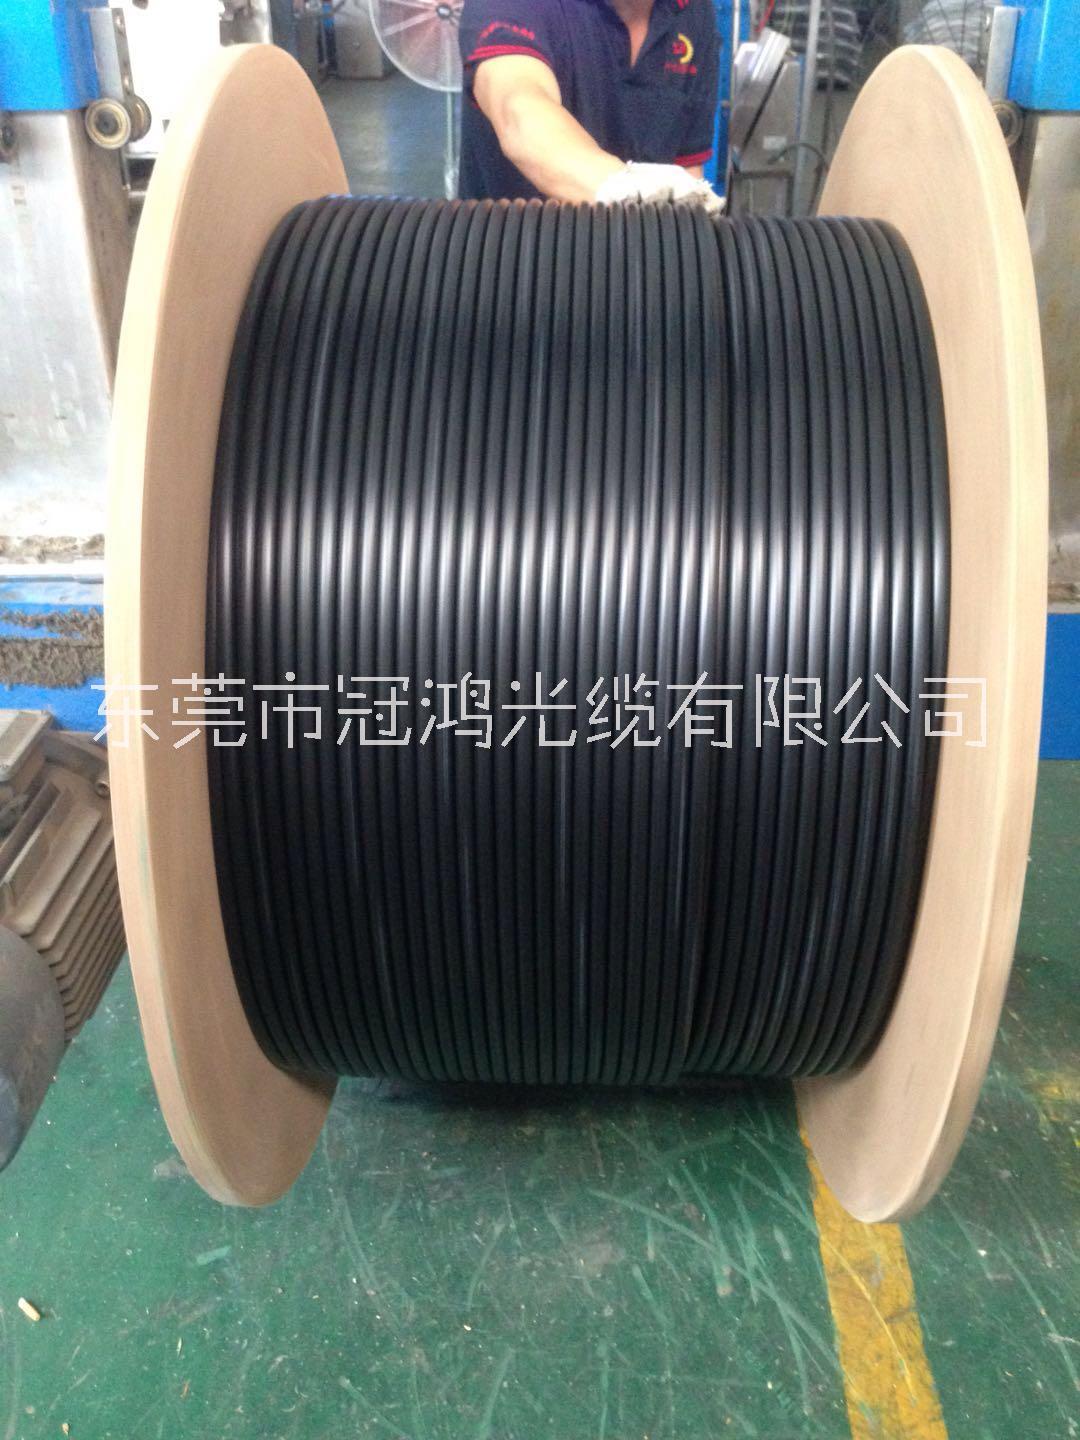 东莞市层绞式室外光缆、可定制厂家GYTA层绞式室外光缆 层绞式室外光缆、可定制